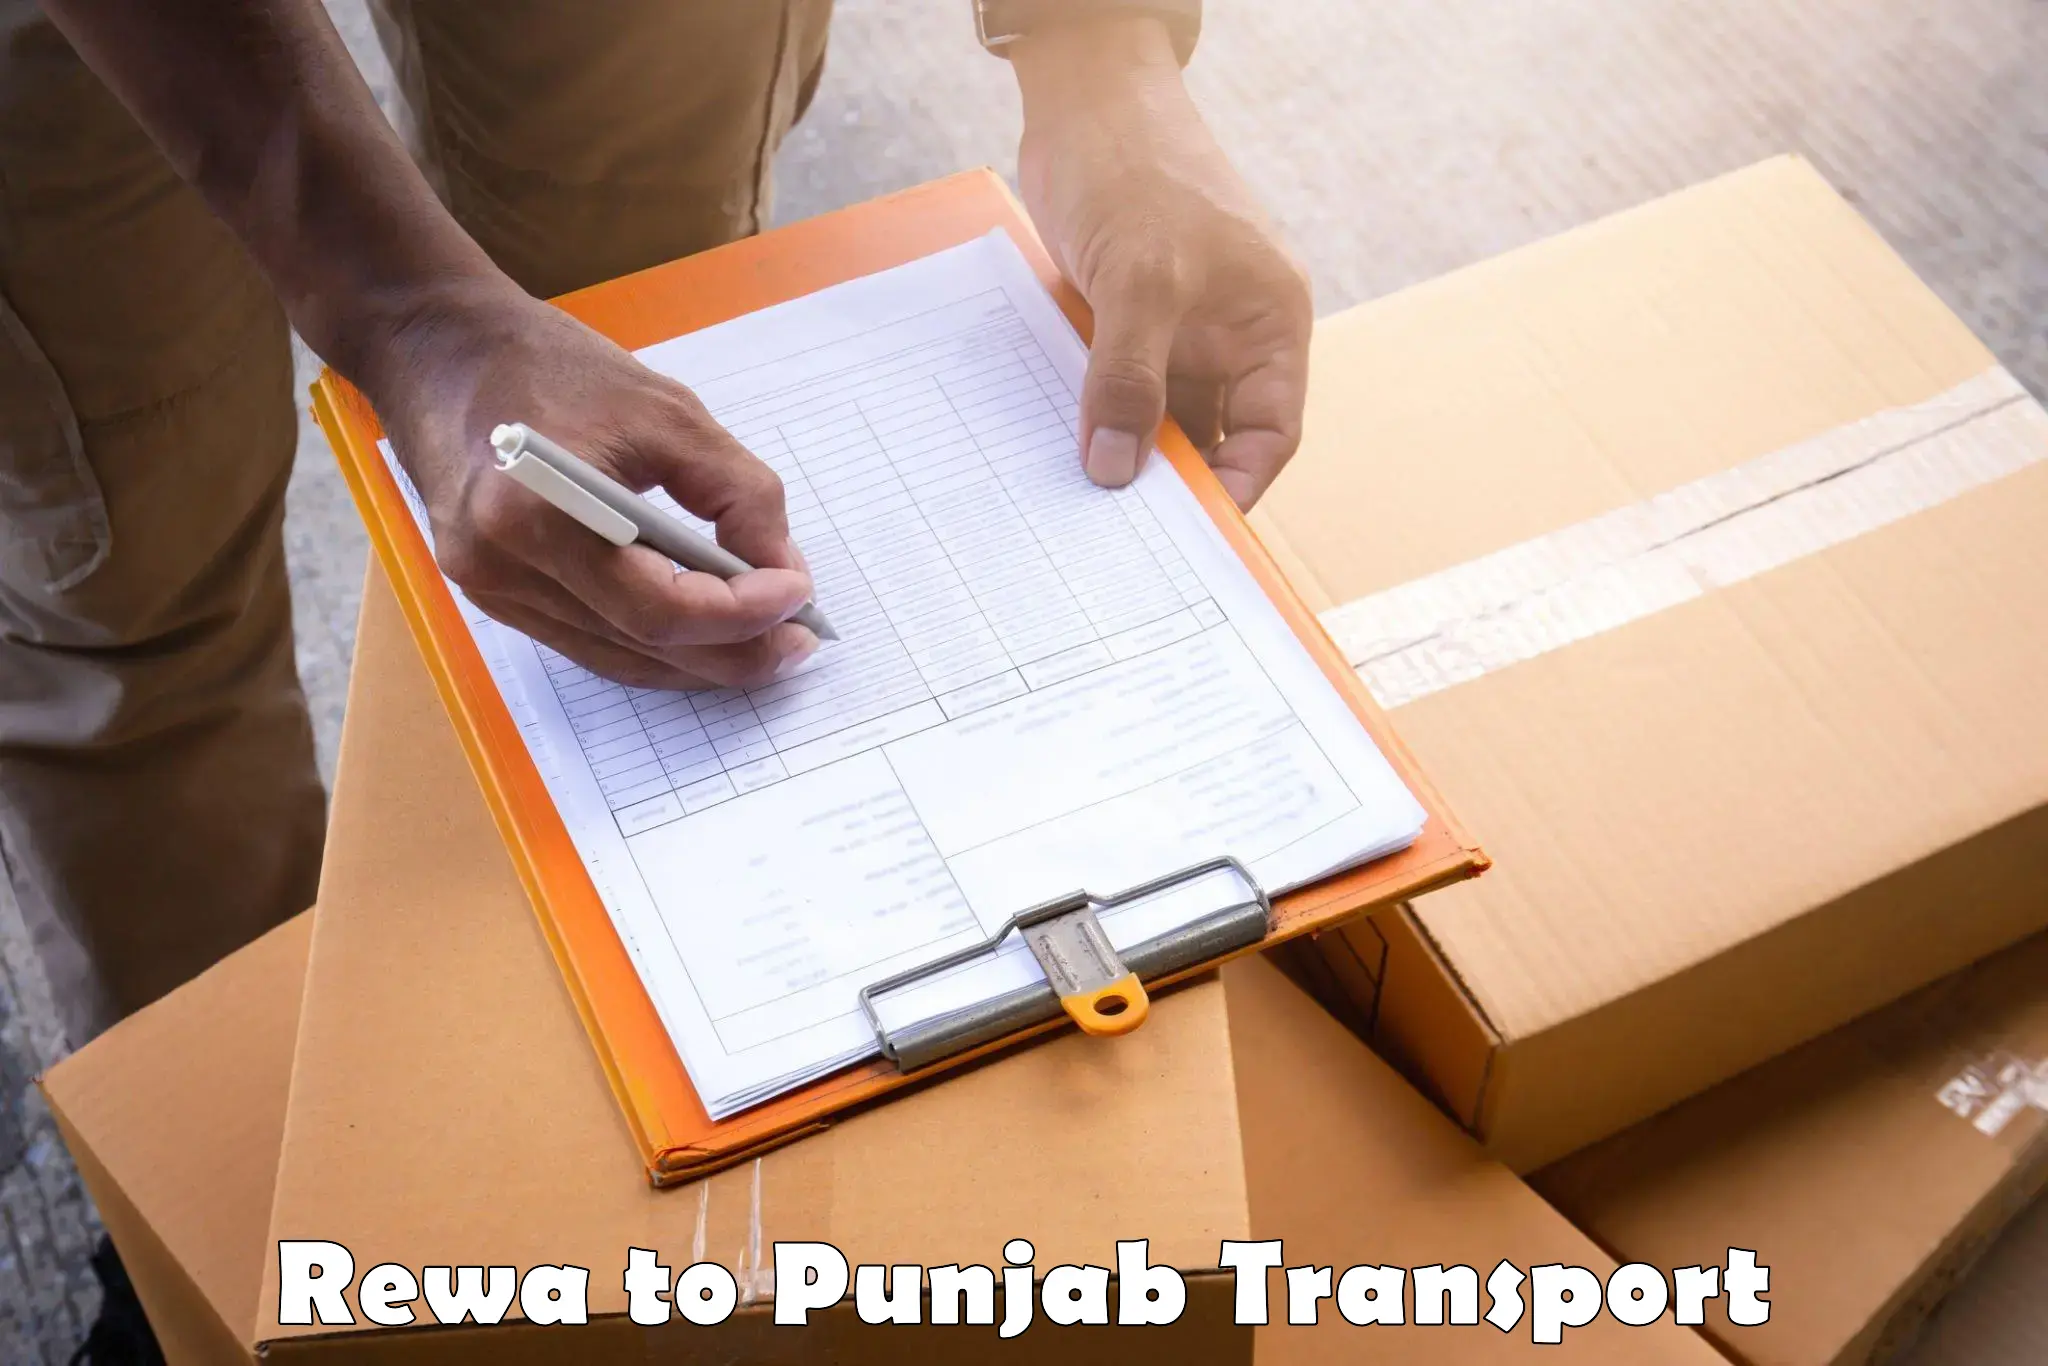 Furniture transport service Rewa to Sultanpur Lodhi